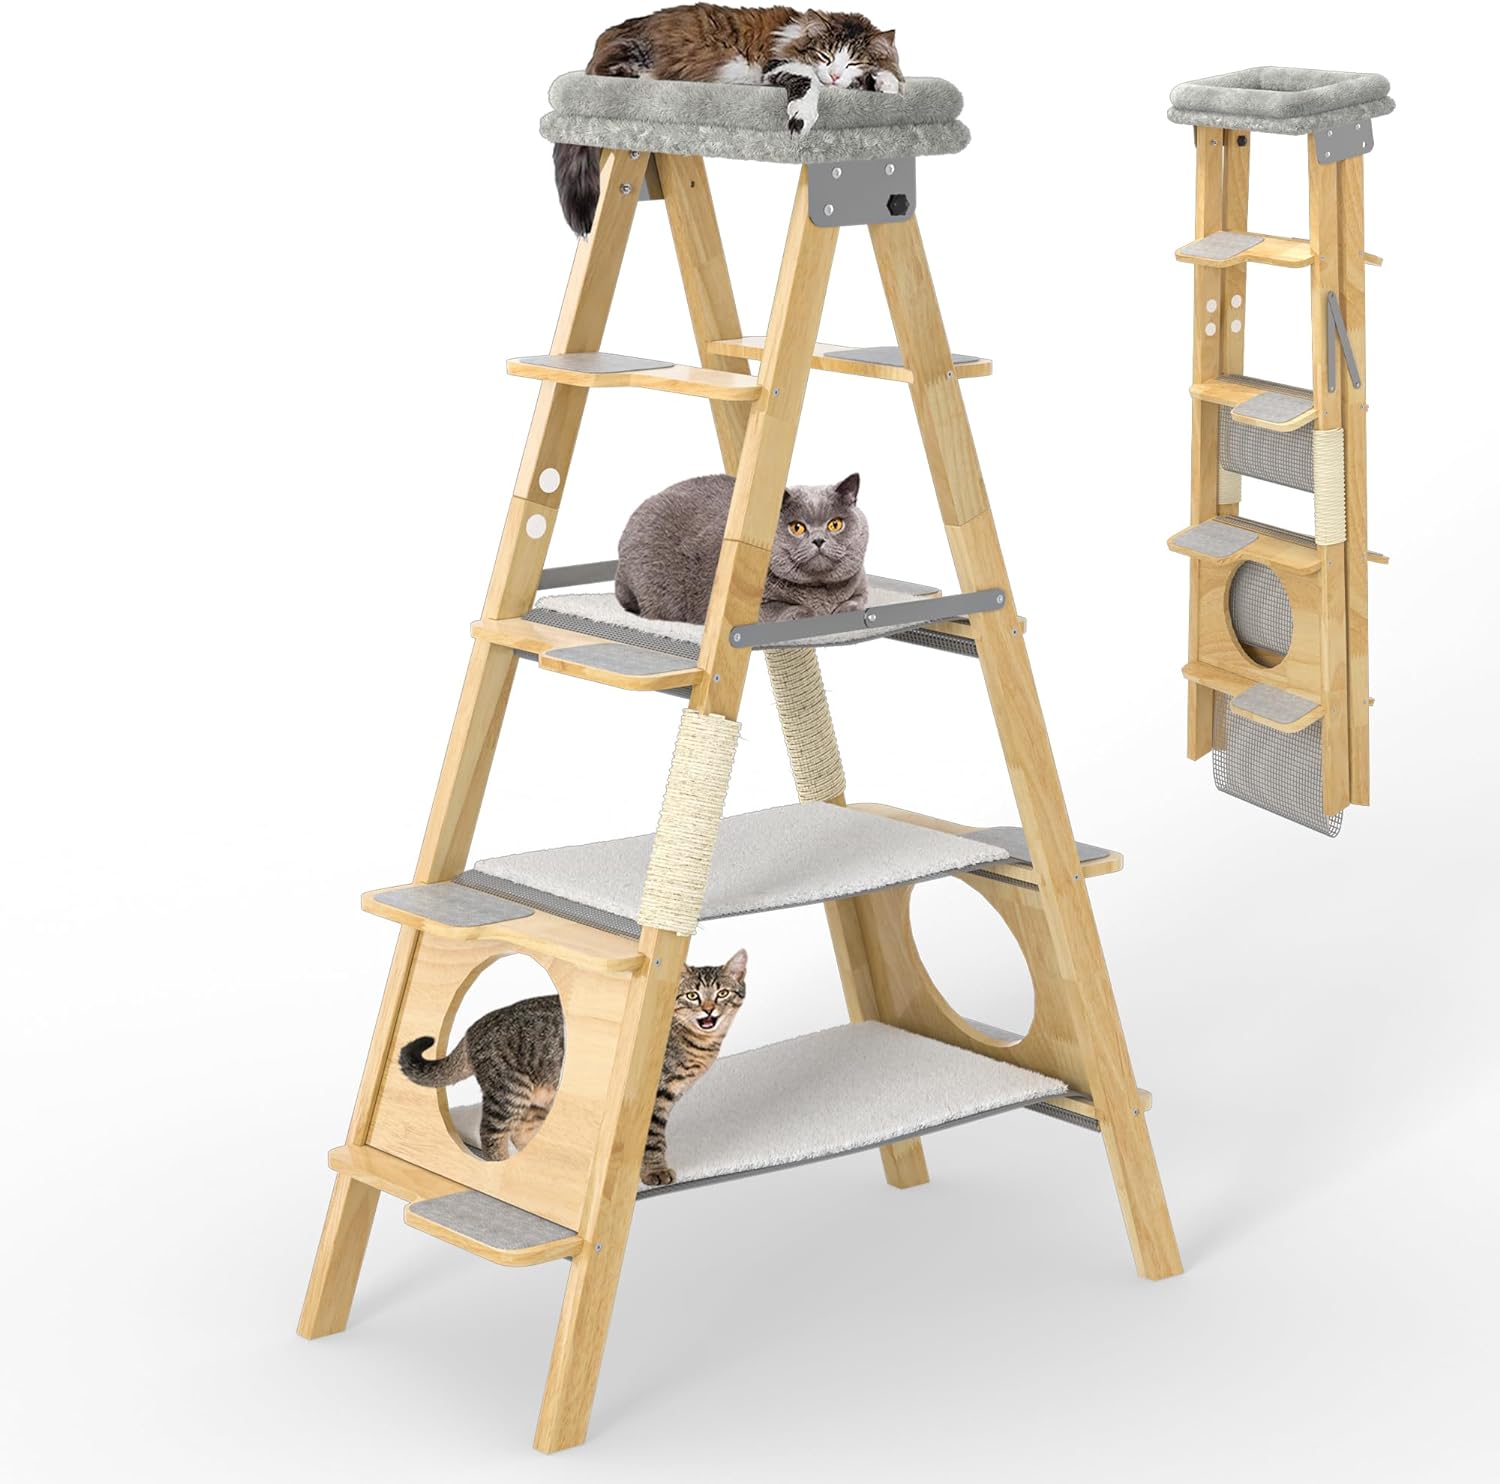 GDLF Moderno árbol de madera para gatos con diseño de escalera